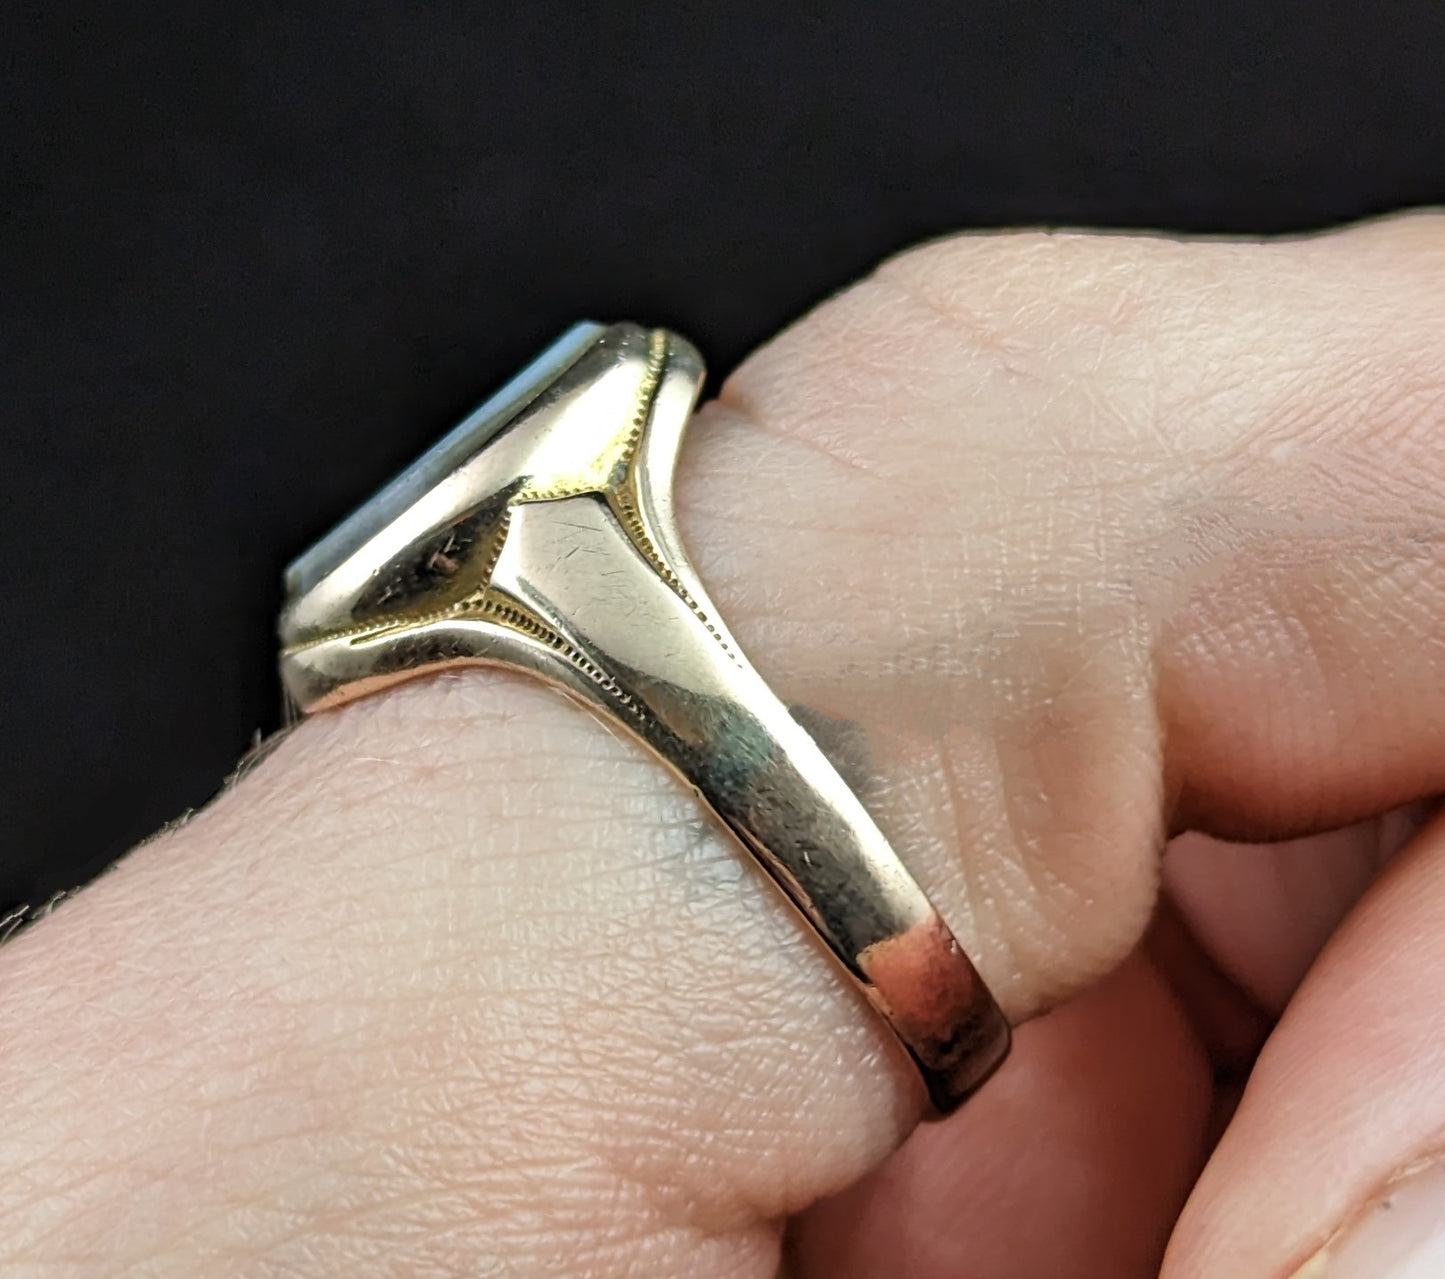 Antique 9ct gold Sardonyx signet ring, pinky ring